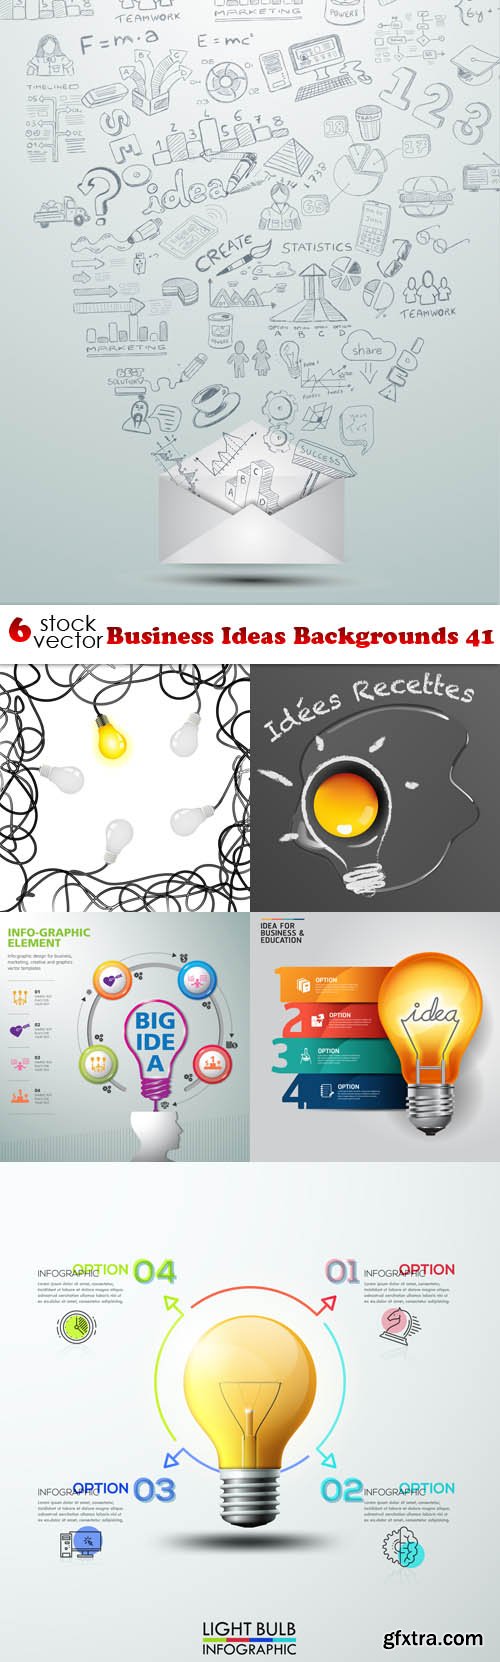 Vectors - Business Ideas Backgrounds 41